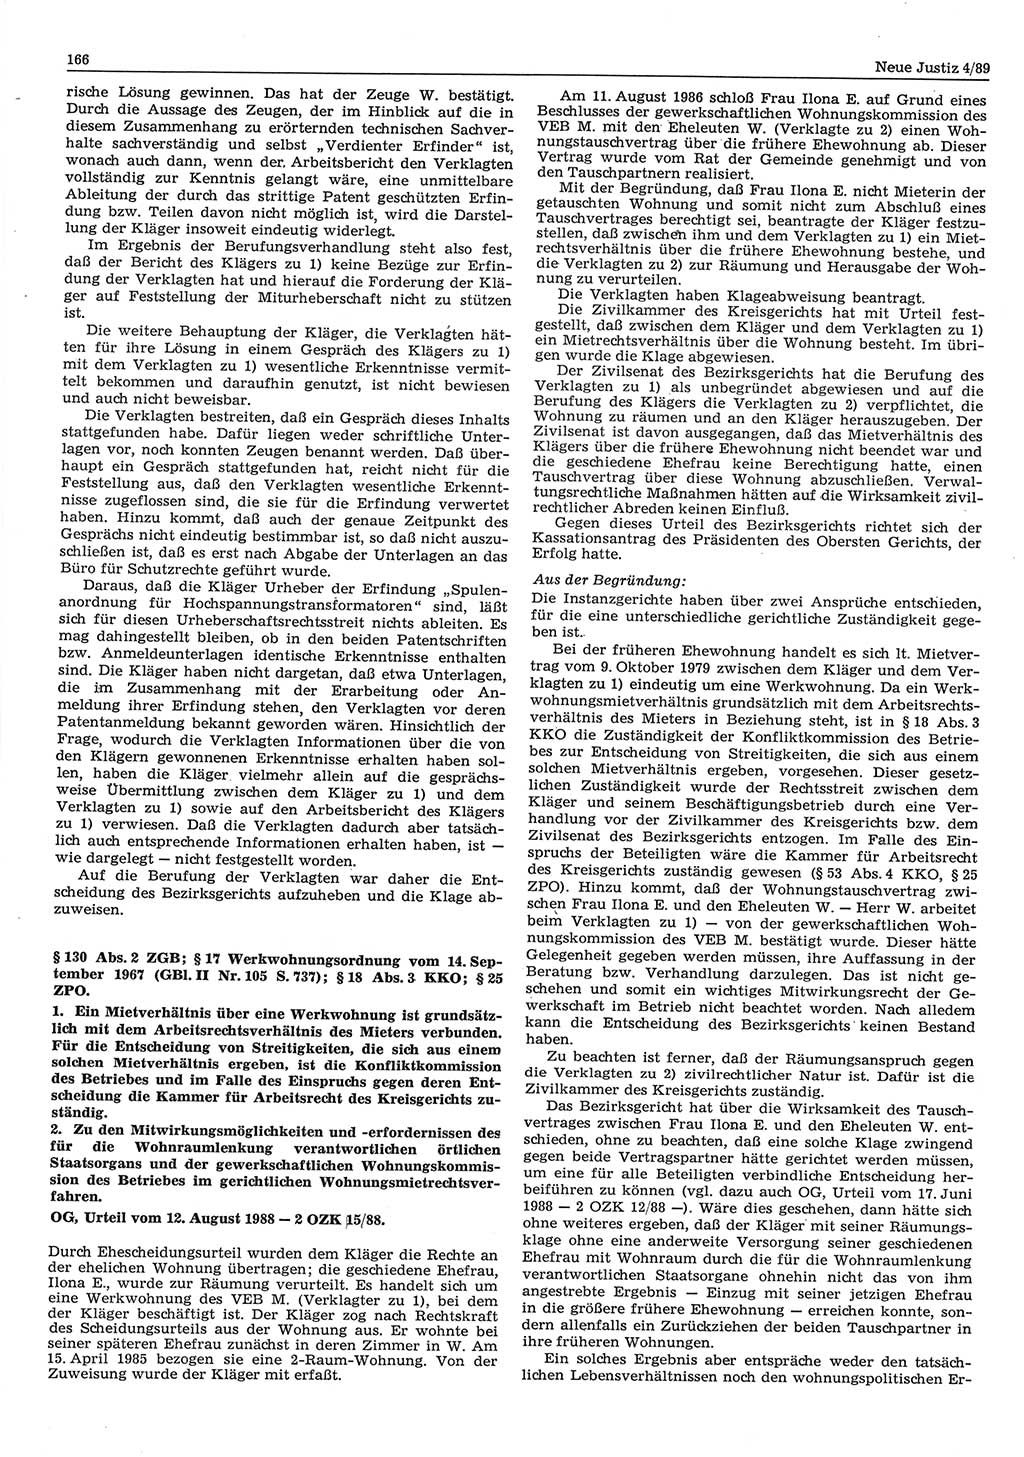 Neue Justiz (NJ), Zeitschrift für sozialistisches Recht und Gesetzlichkeit [Deutsche Demokratische Republik (DDR)], 43. Jahrgang 1989, Seite 166 (NJ DDR 1989, S. 166)